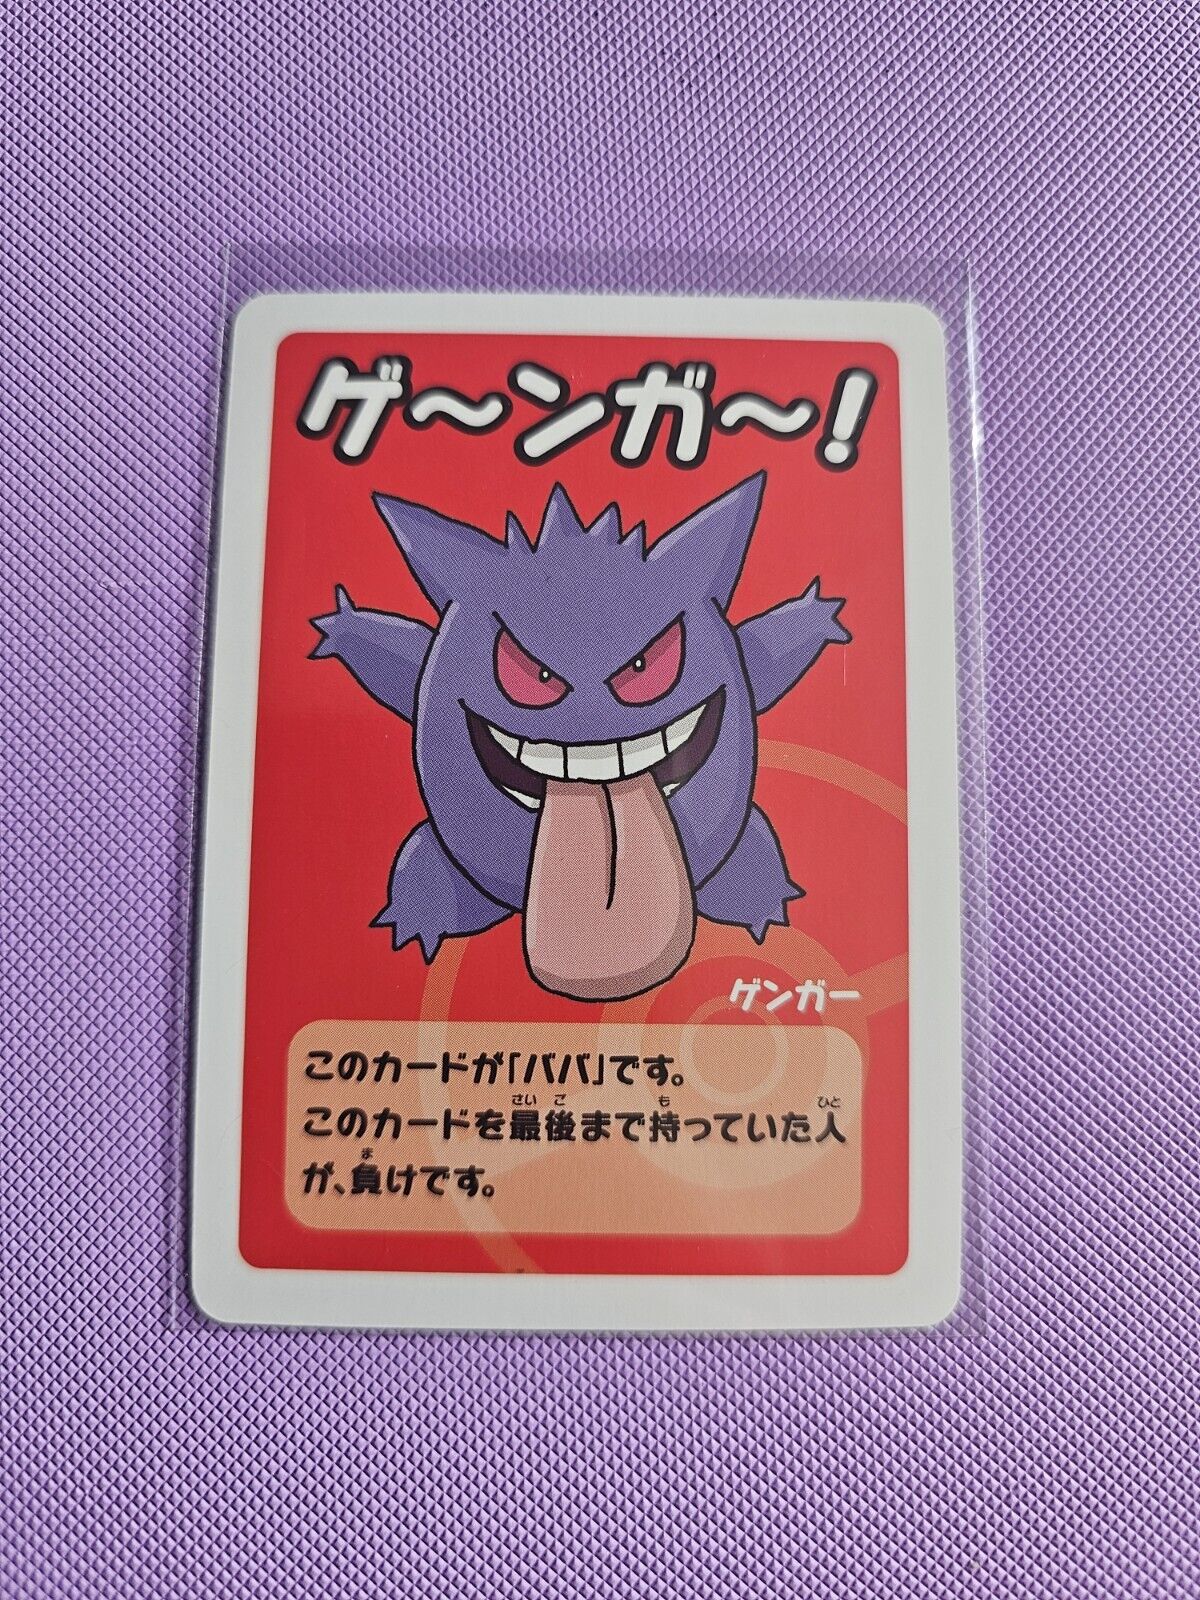 Gengar Old Maid Baba Game Card Pokemon Japanese Import NM UK seller